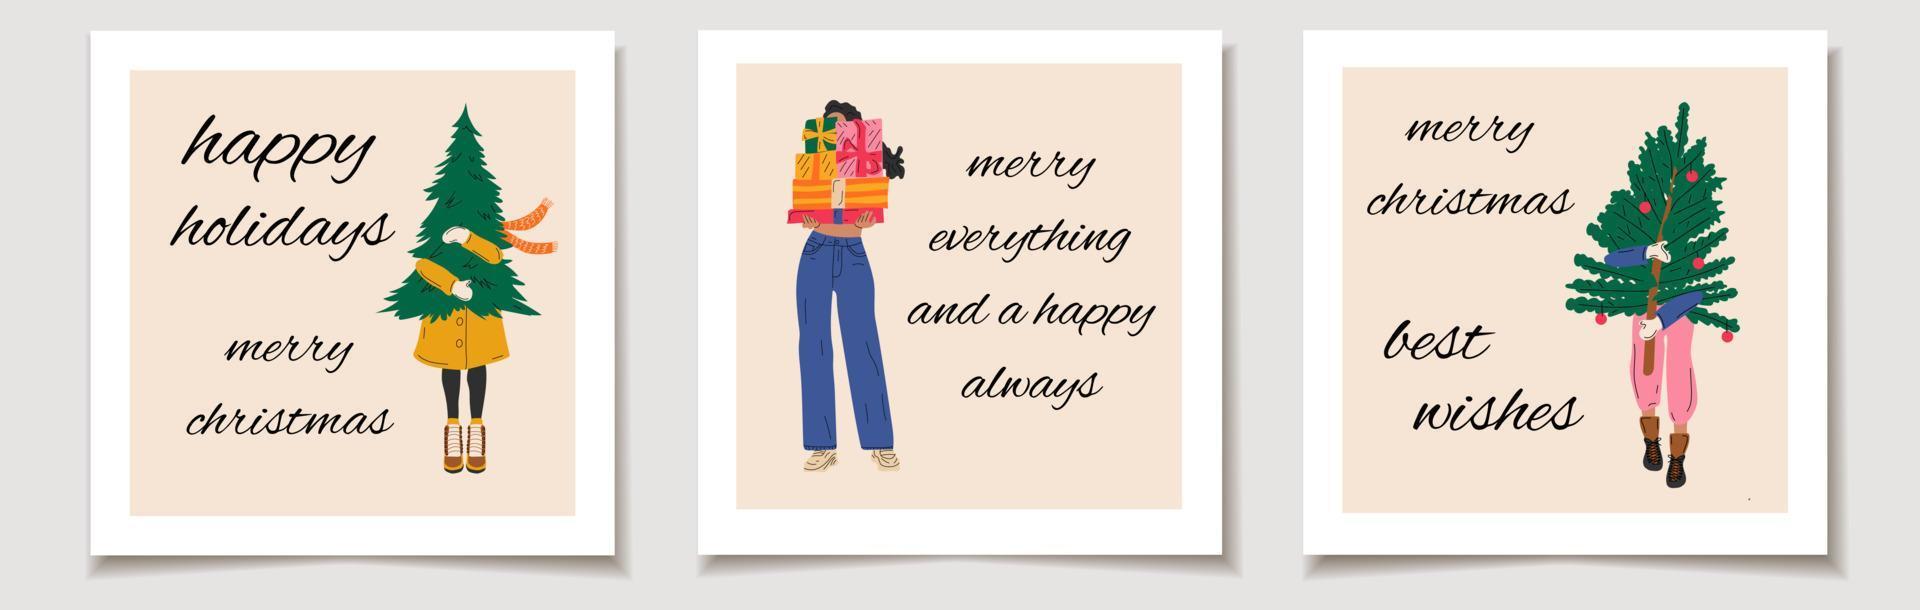 jul vektor gåva kort eller märka uppsättning flickor den där är bära jul träd glad jul text, bäst lyckönskningar.